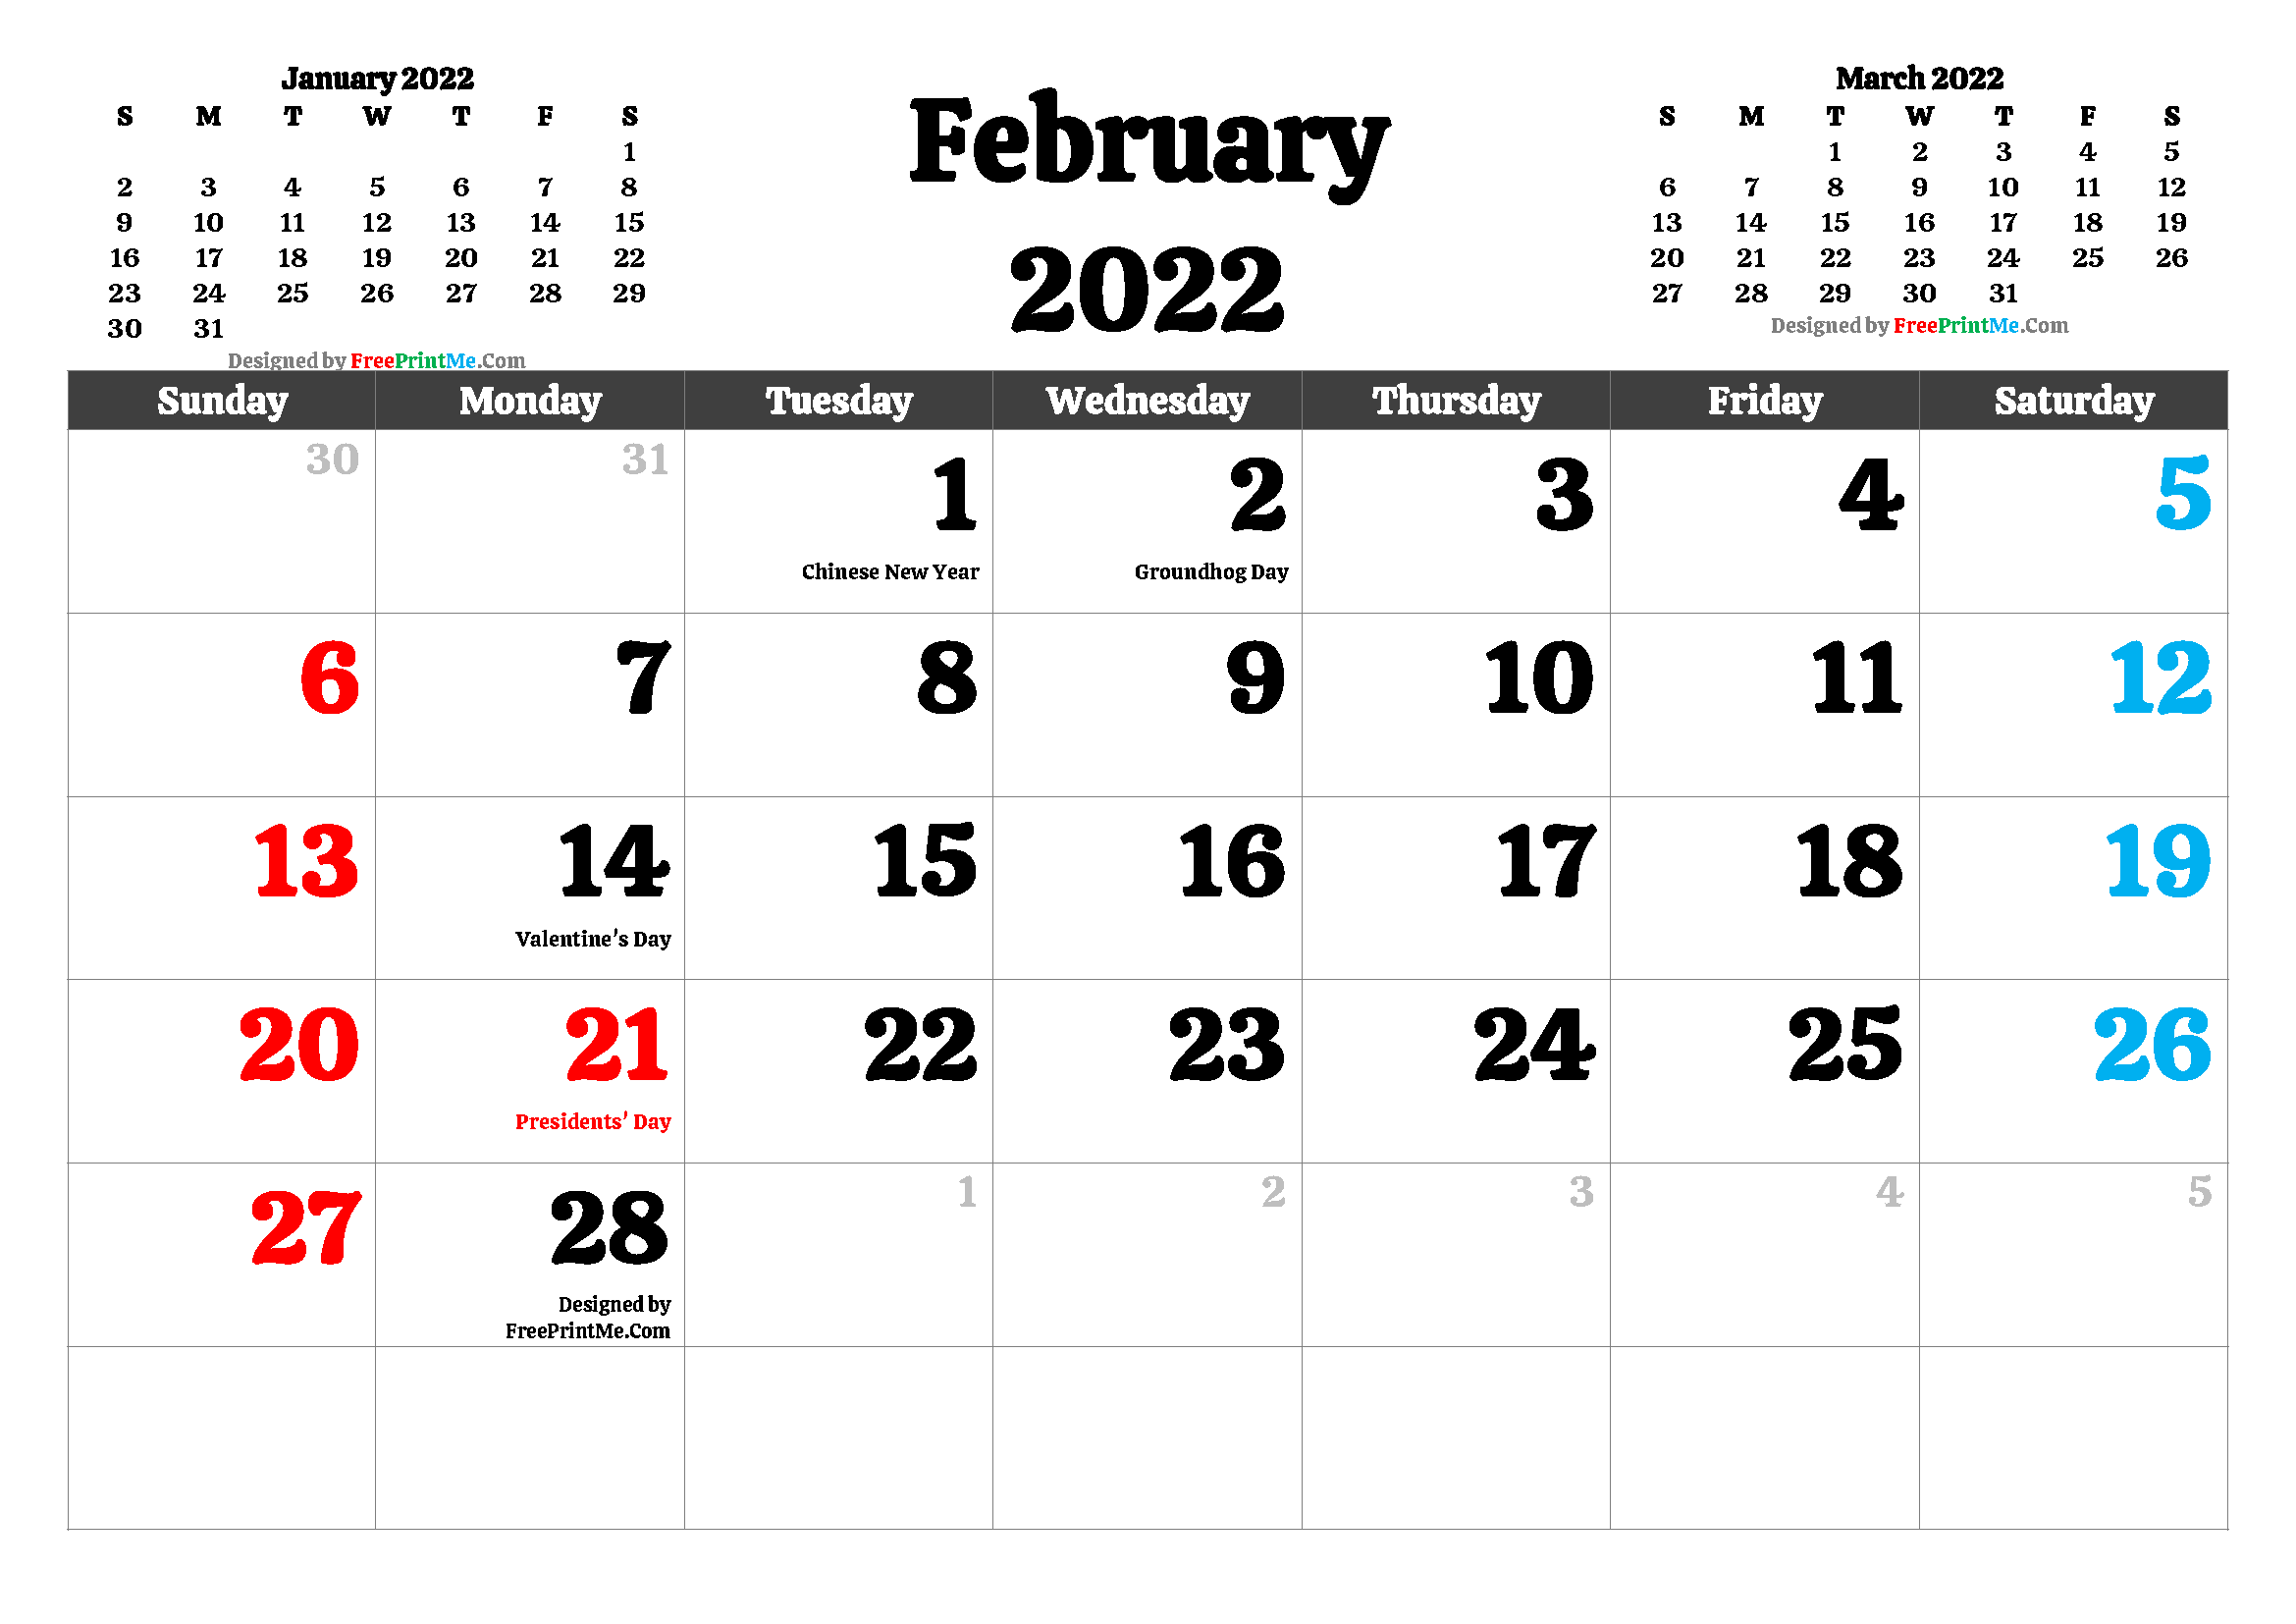 February 2022 Calendar Free Printable February 2022 Calendar Pdf And Image